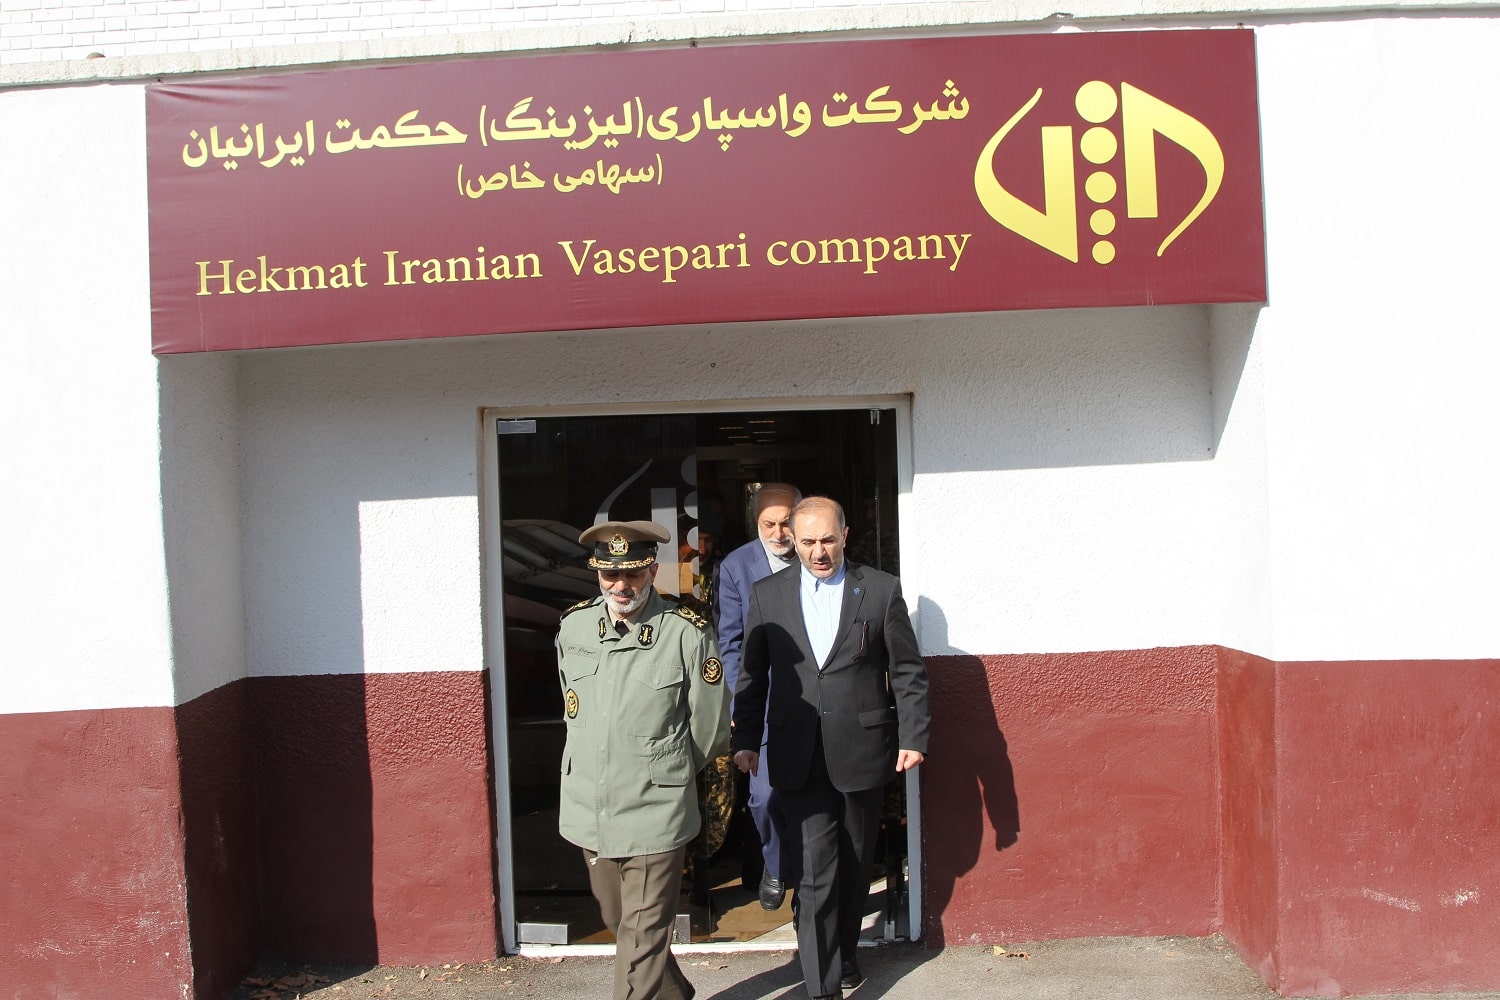 بازدید امیر موسوی فرماندهی محترم ارتش از شرکت واسپاری حکمت ایرانیان